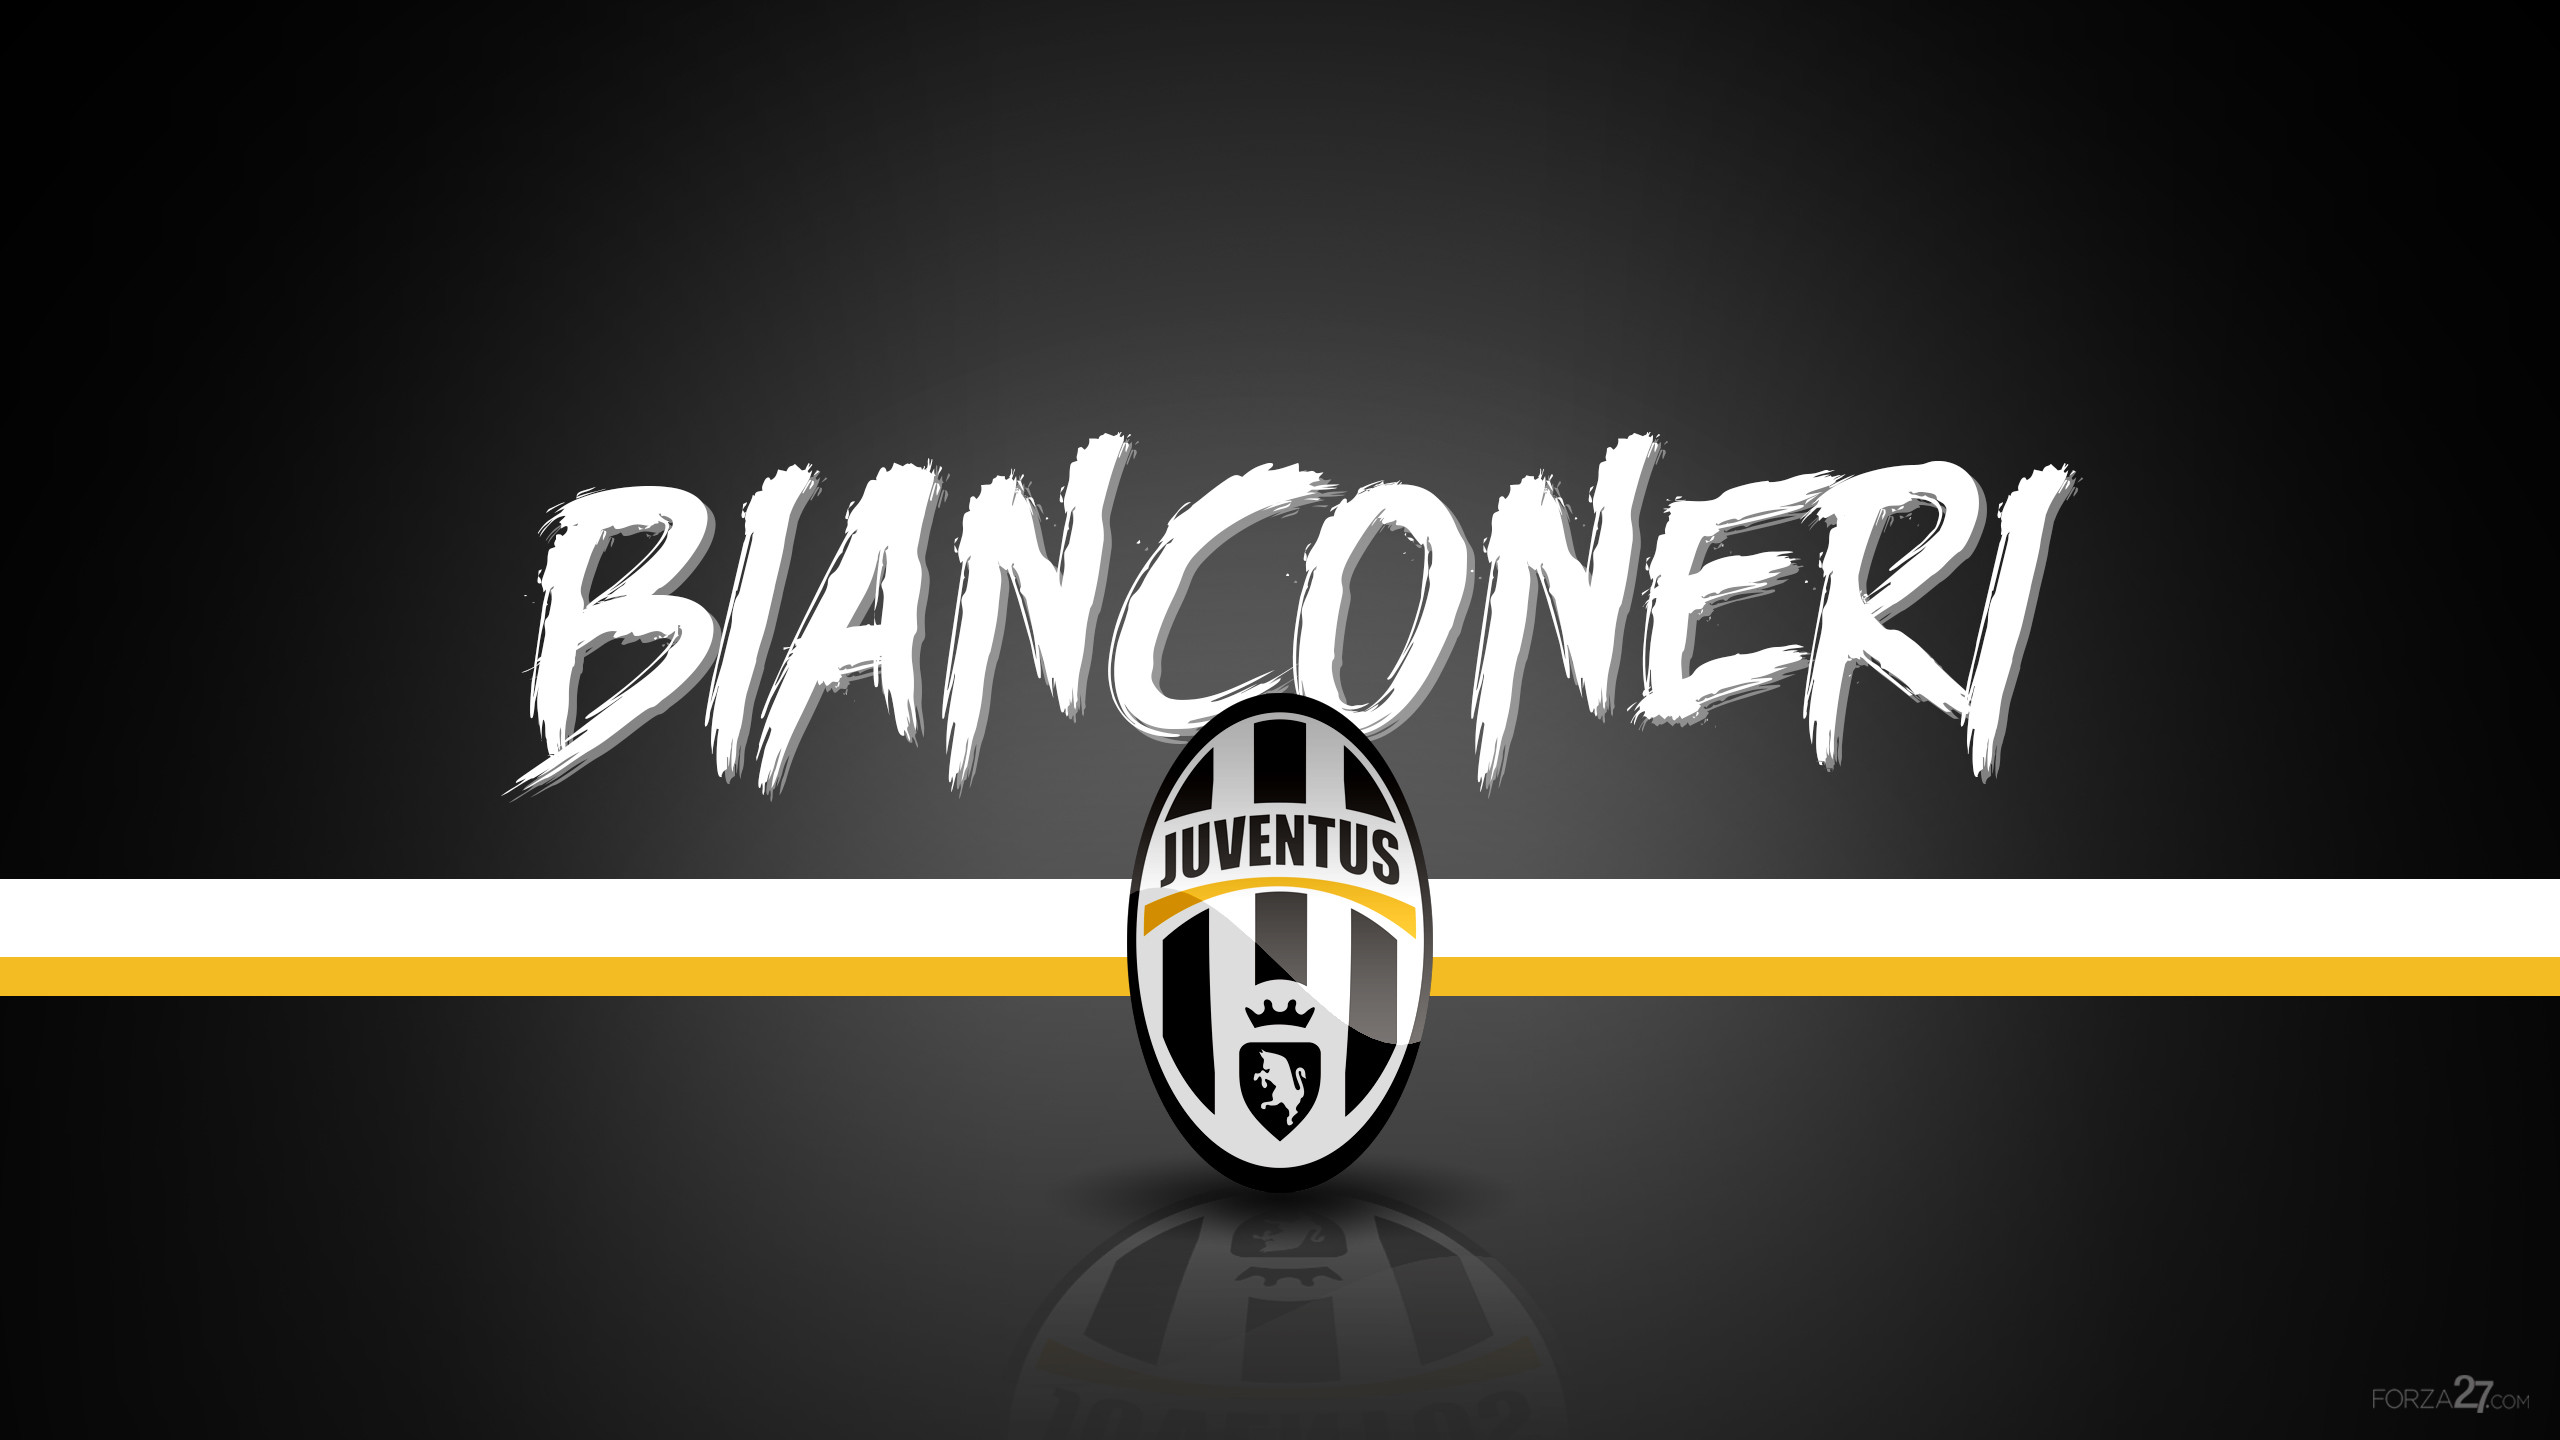 Logo Juventus Wallpaper 2018 (75+ images)2560 x 1440